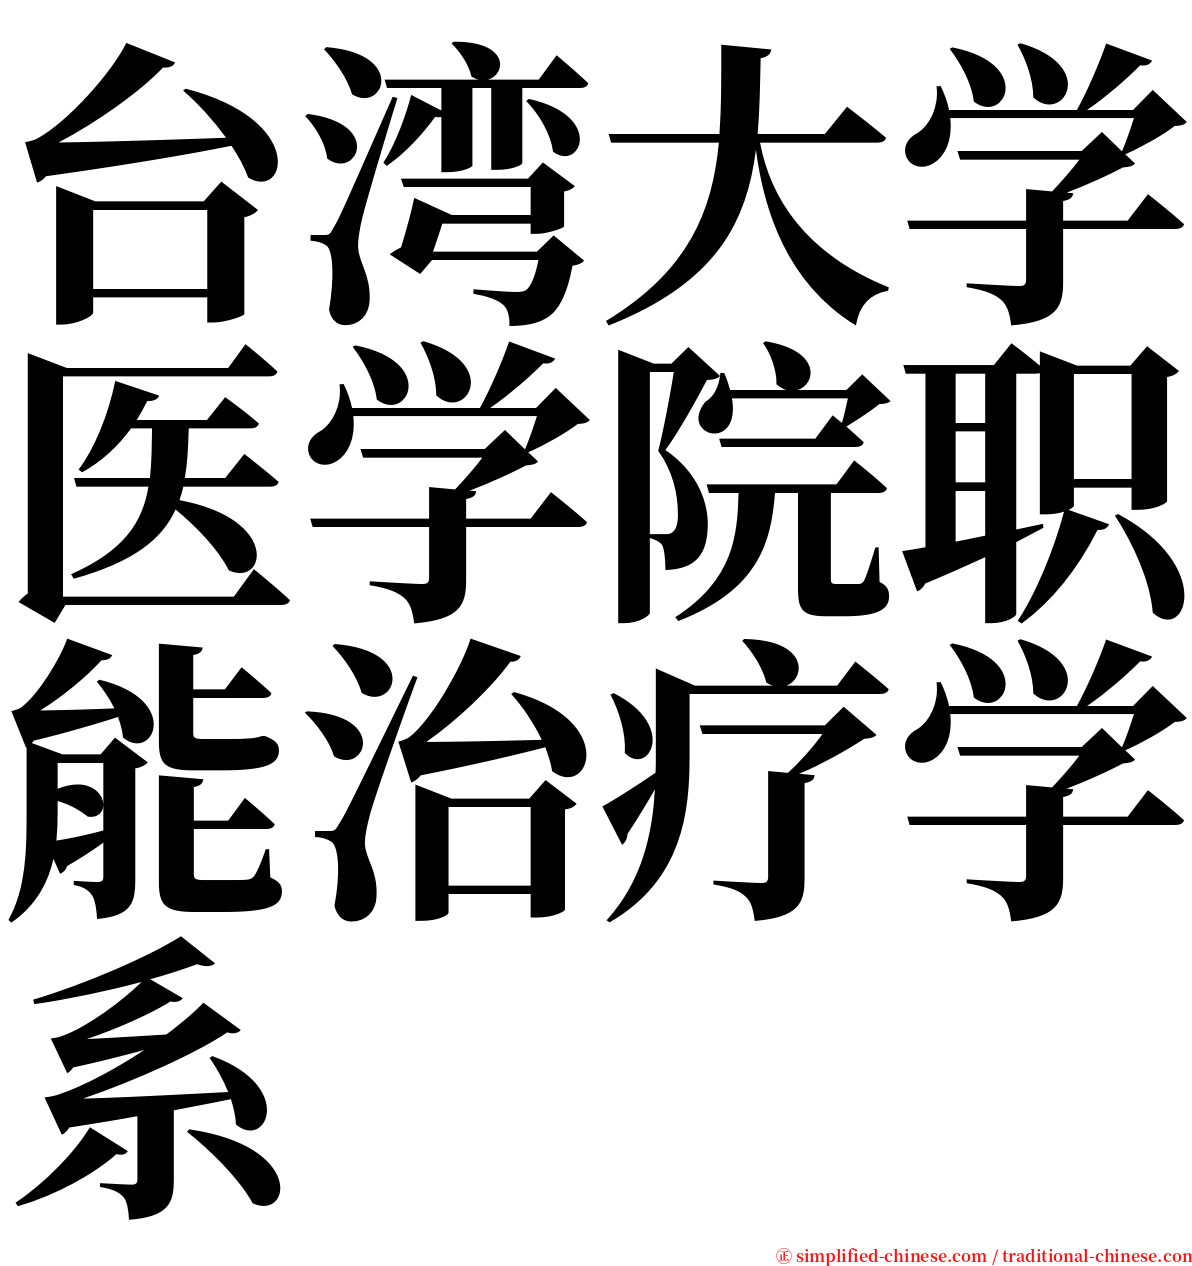 台湾大学医学院职能治疗学系 serif font